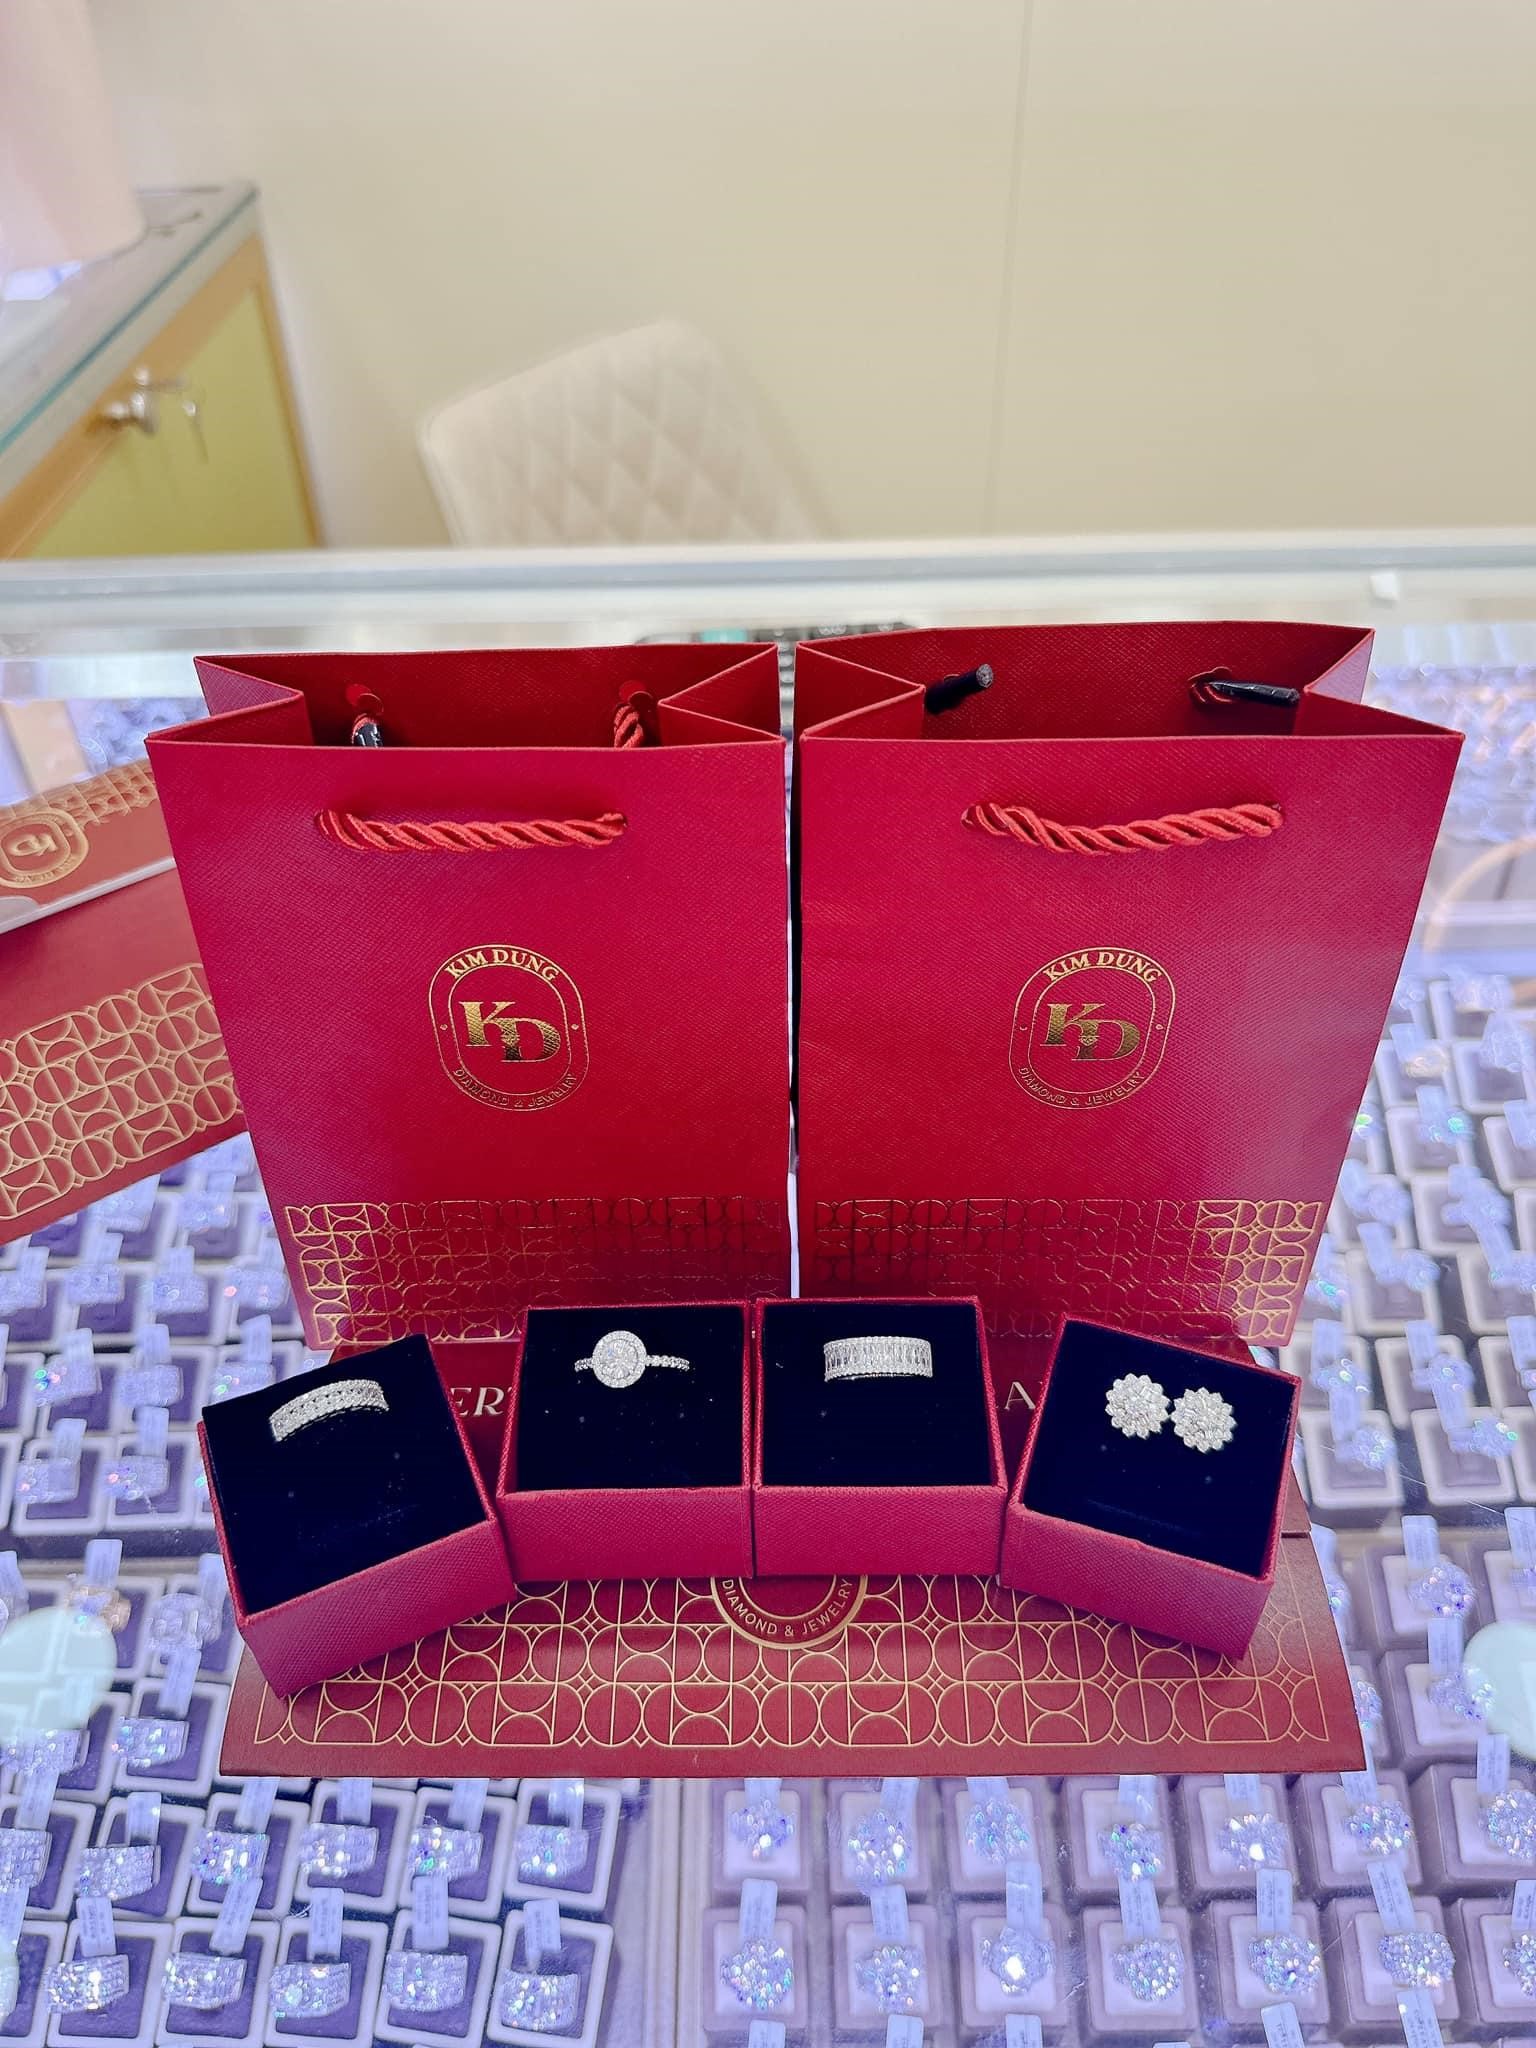 Kim Dung Diamond Jewelry và hành trình xây dựng thương hiệu kim cương uy tín - ảnh 3